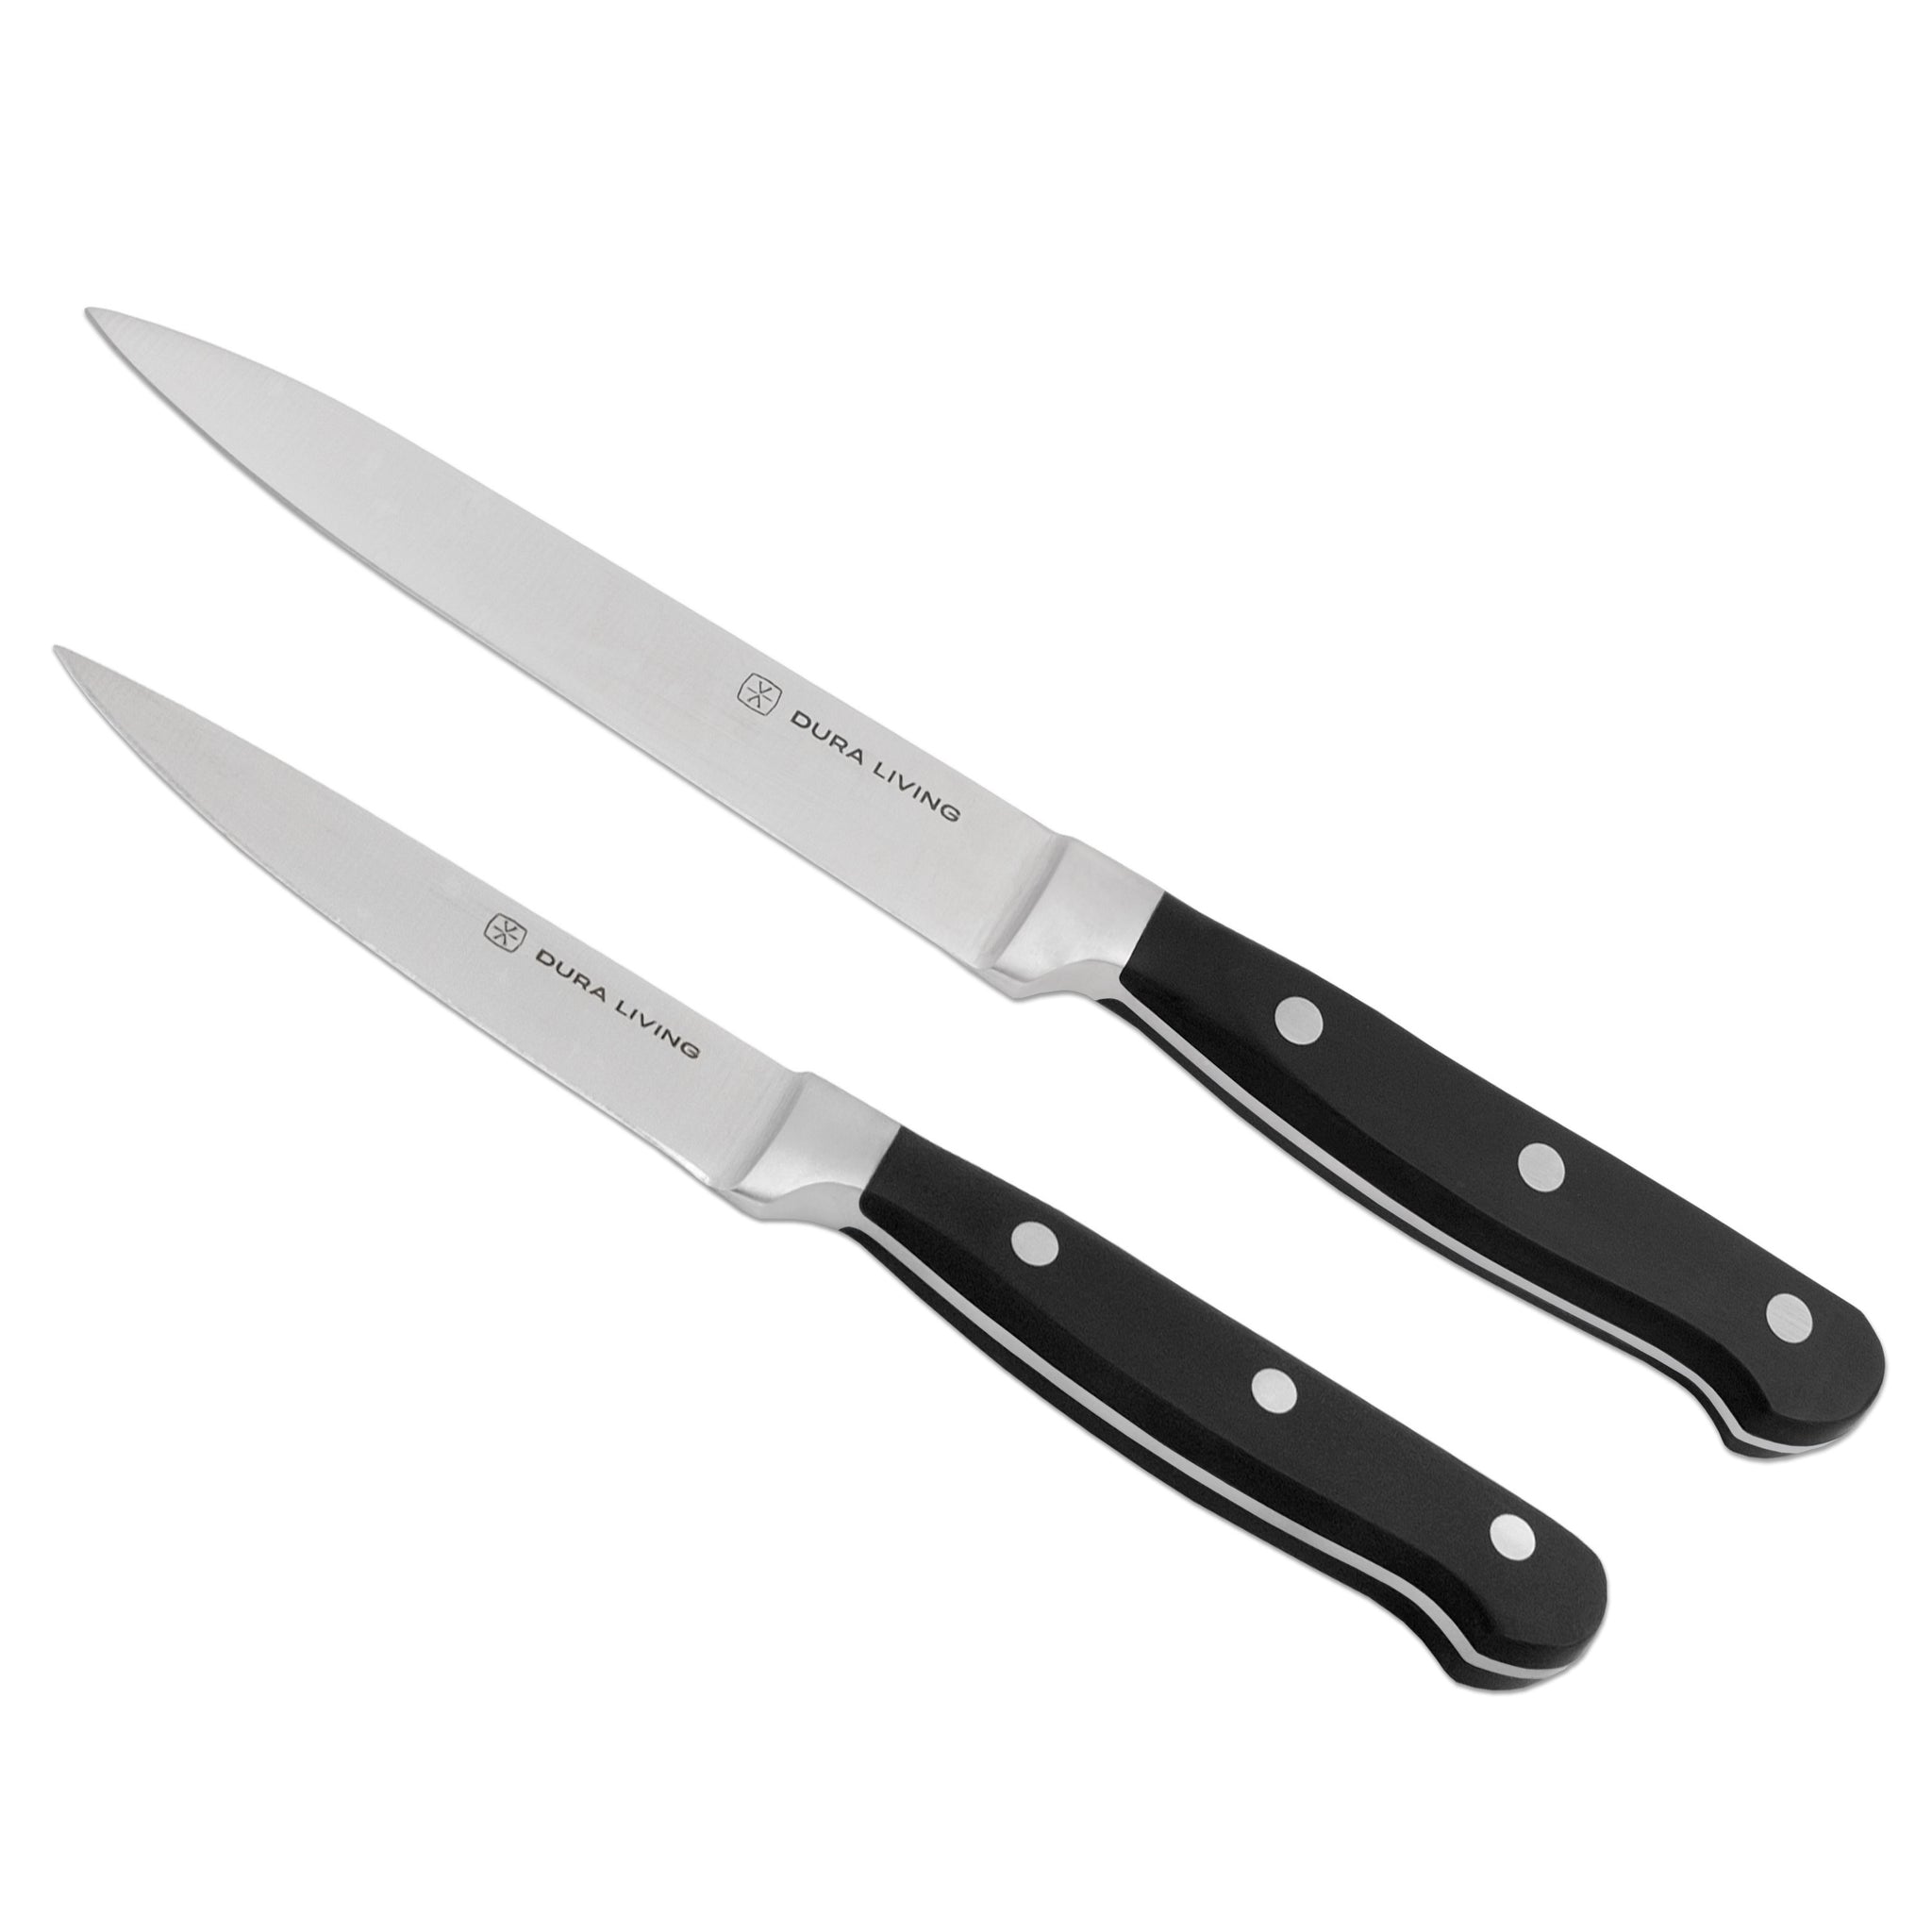 Superior 2-Piece Kitchen Knife Set - Black